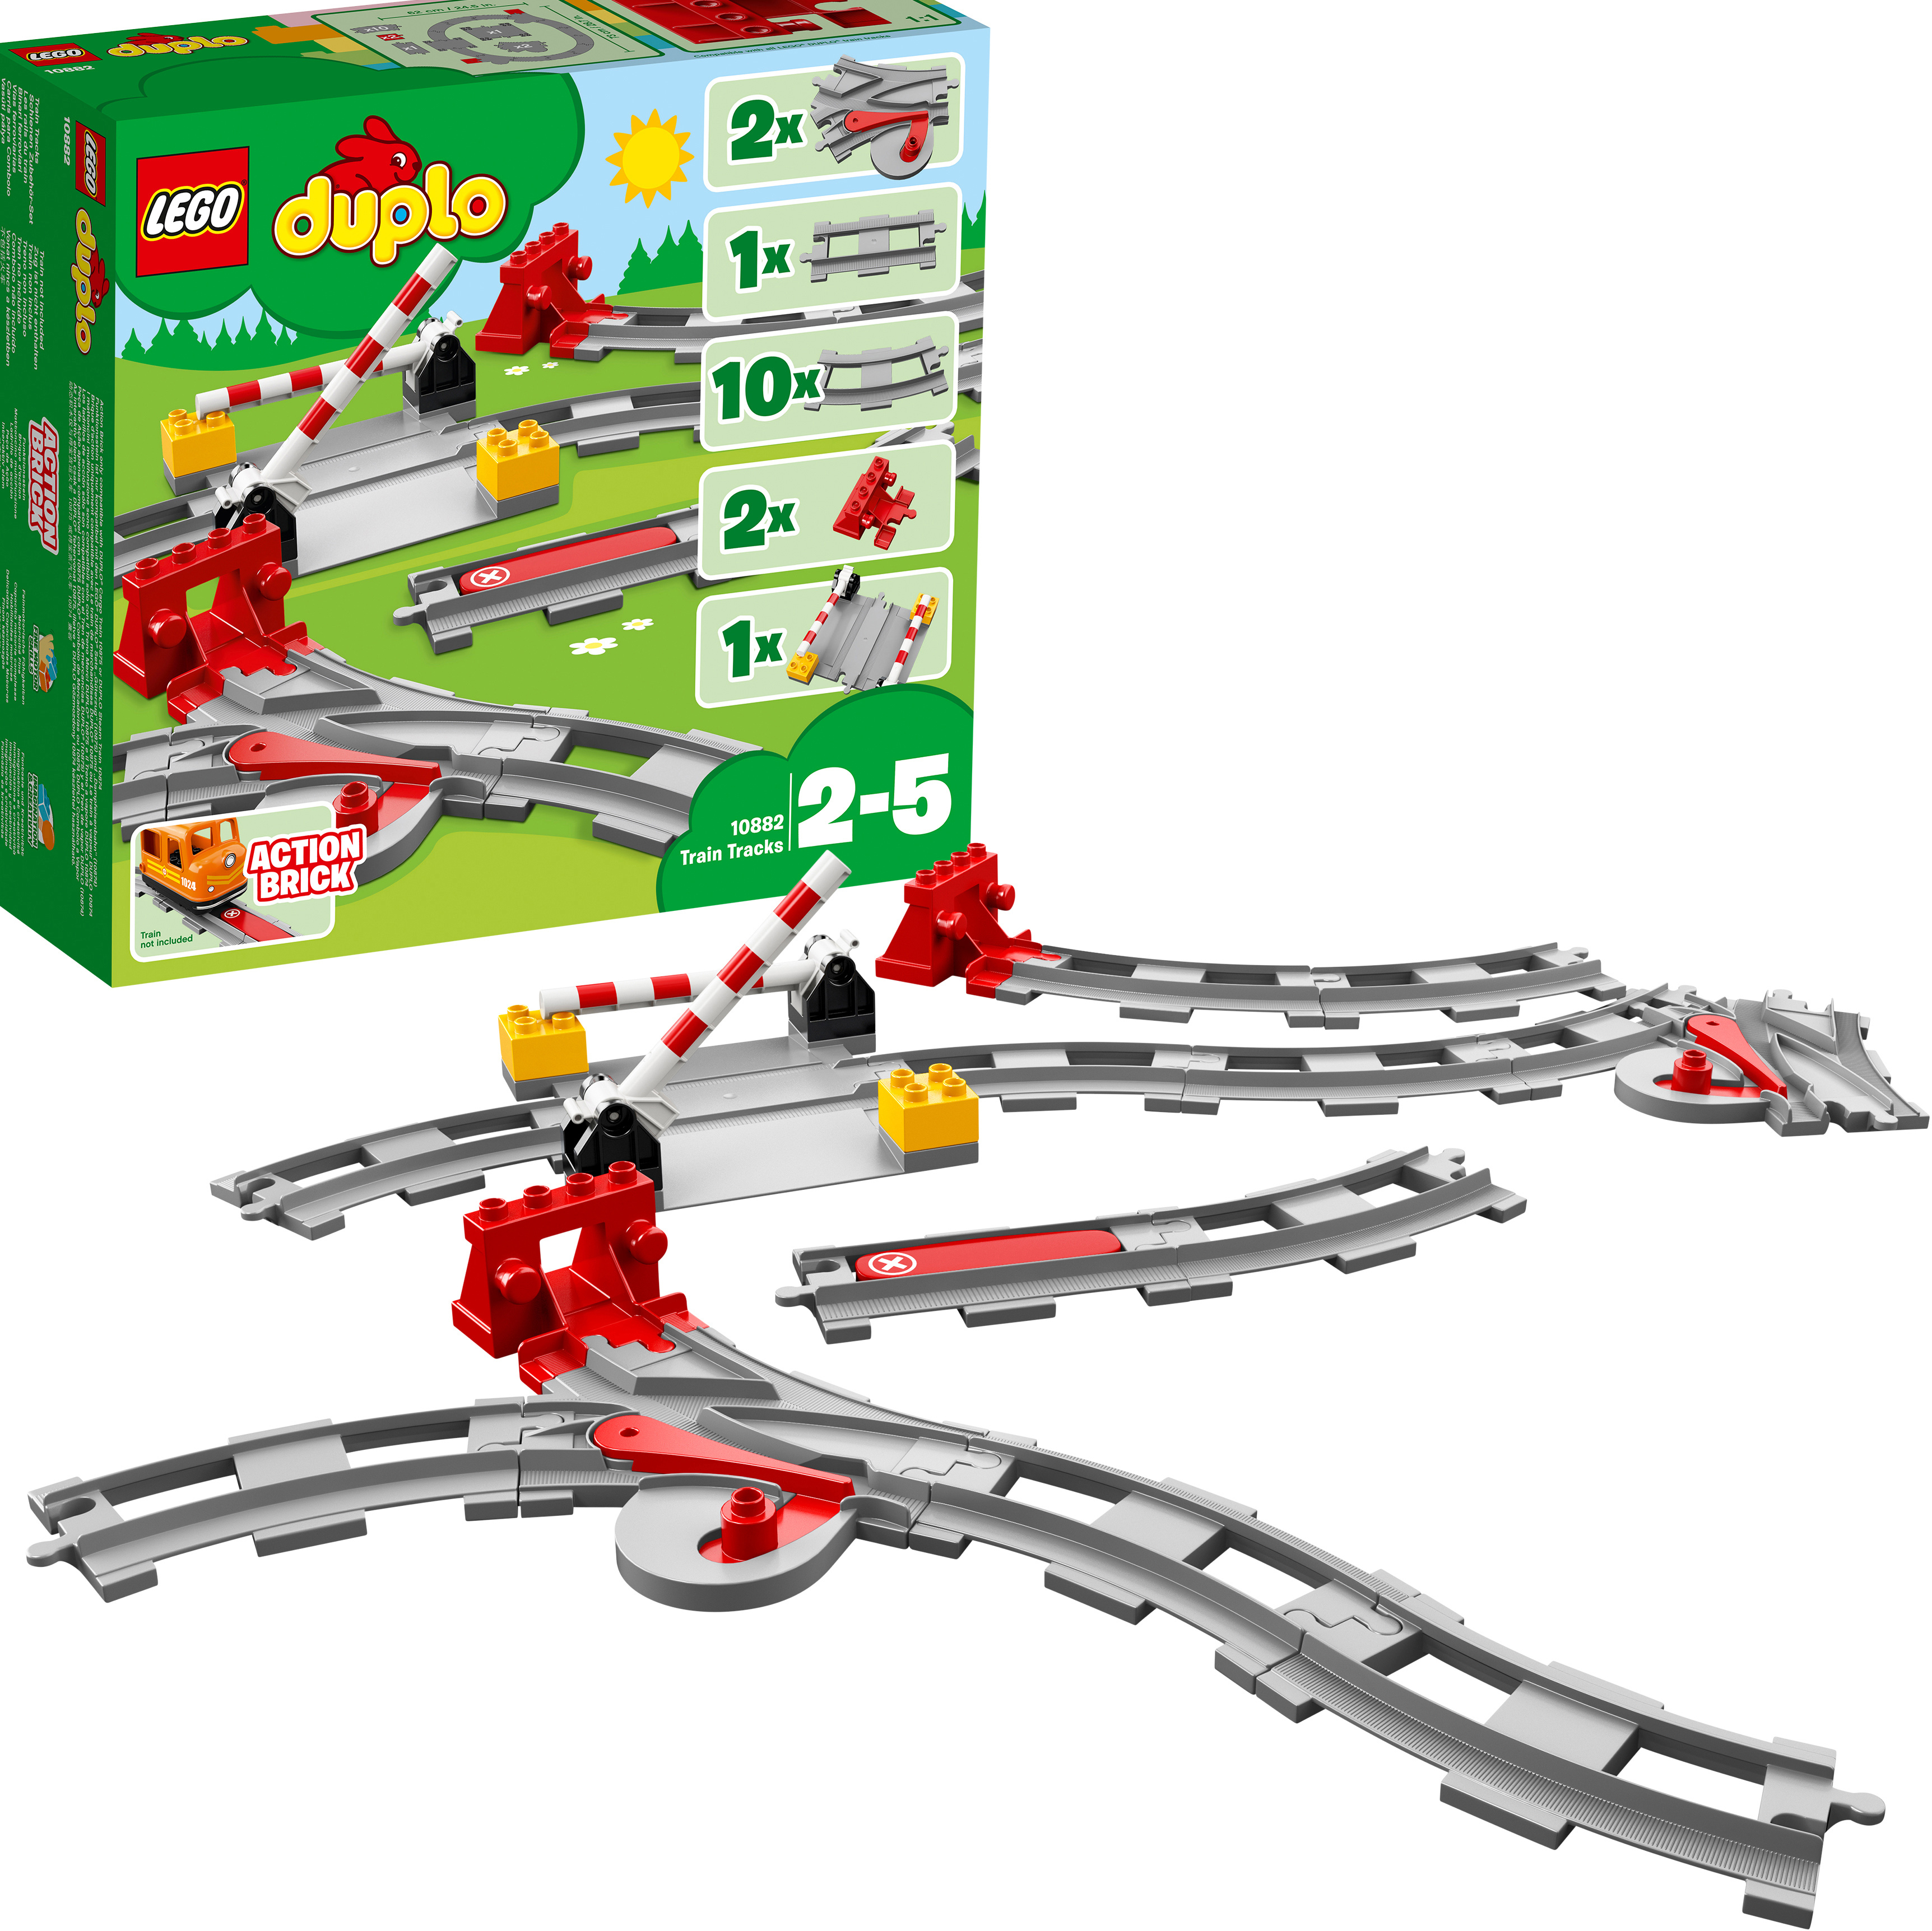 10882 Eisenbahn Bausatz, LEGO Mehrfarbig Schienen